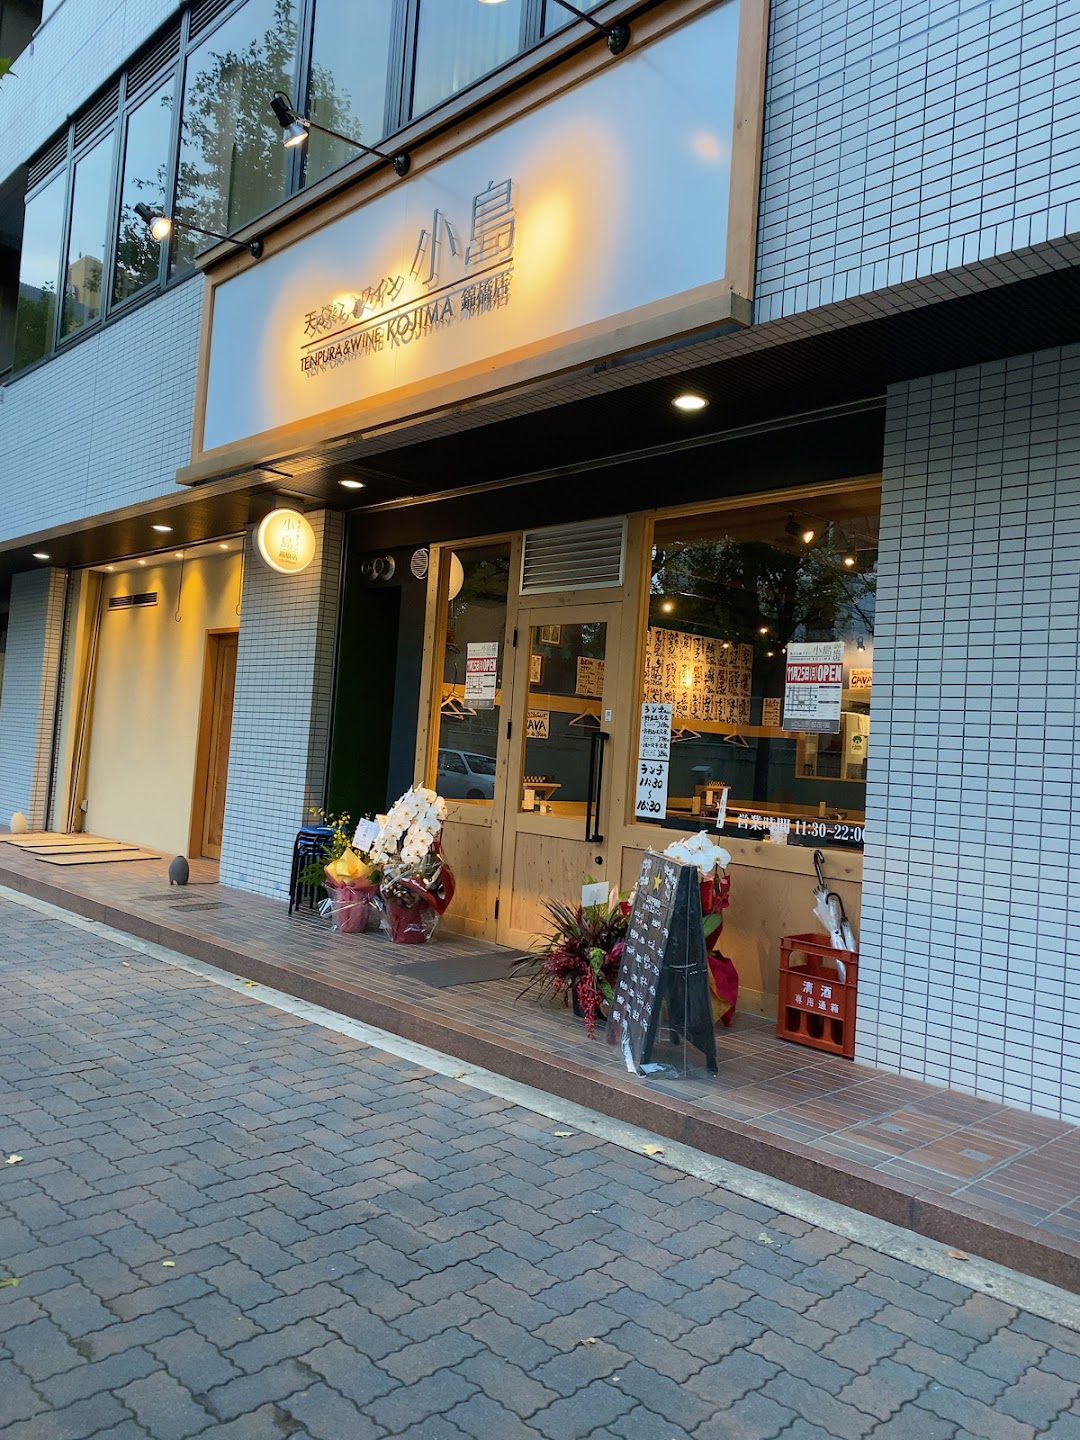 天ぷらとワイン 小島 錦橋店